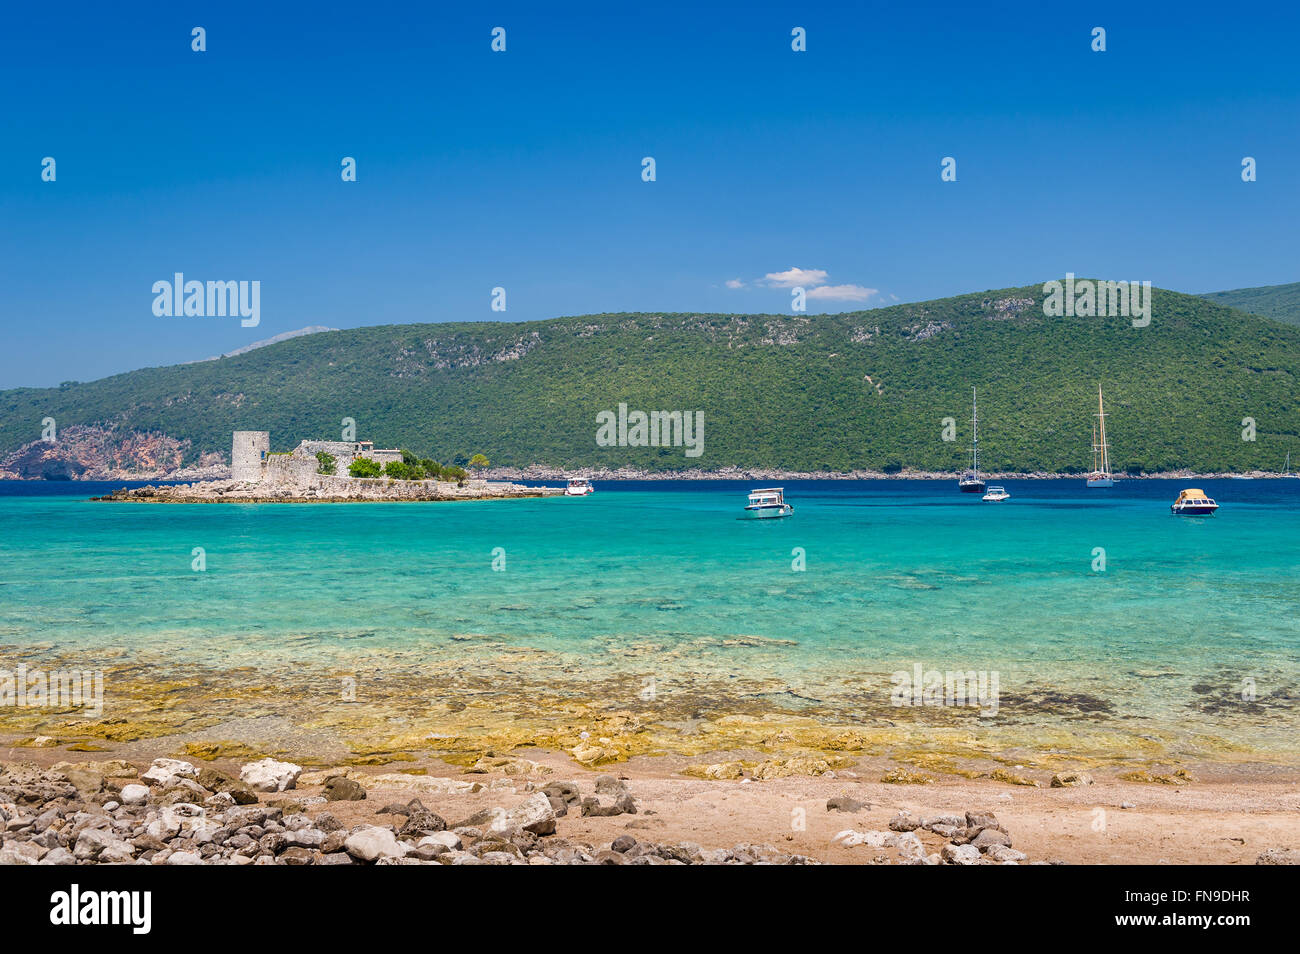 Wunderschöne türkisblaue Bucht, Freizeit Boote und Mirista alte Festung auf der kleinen Insel. Stockfoto